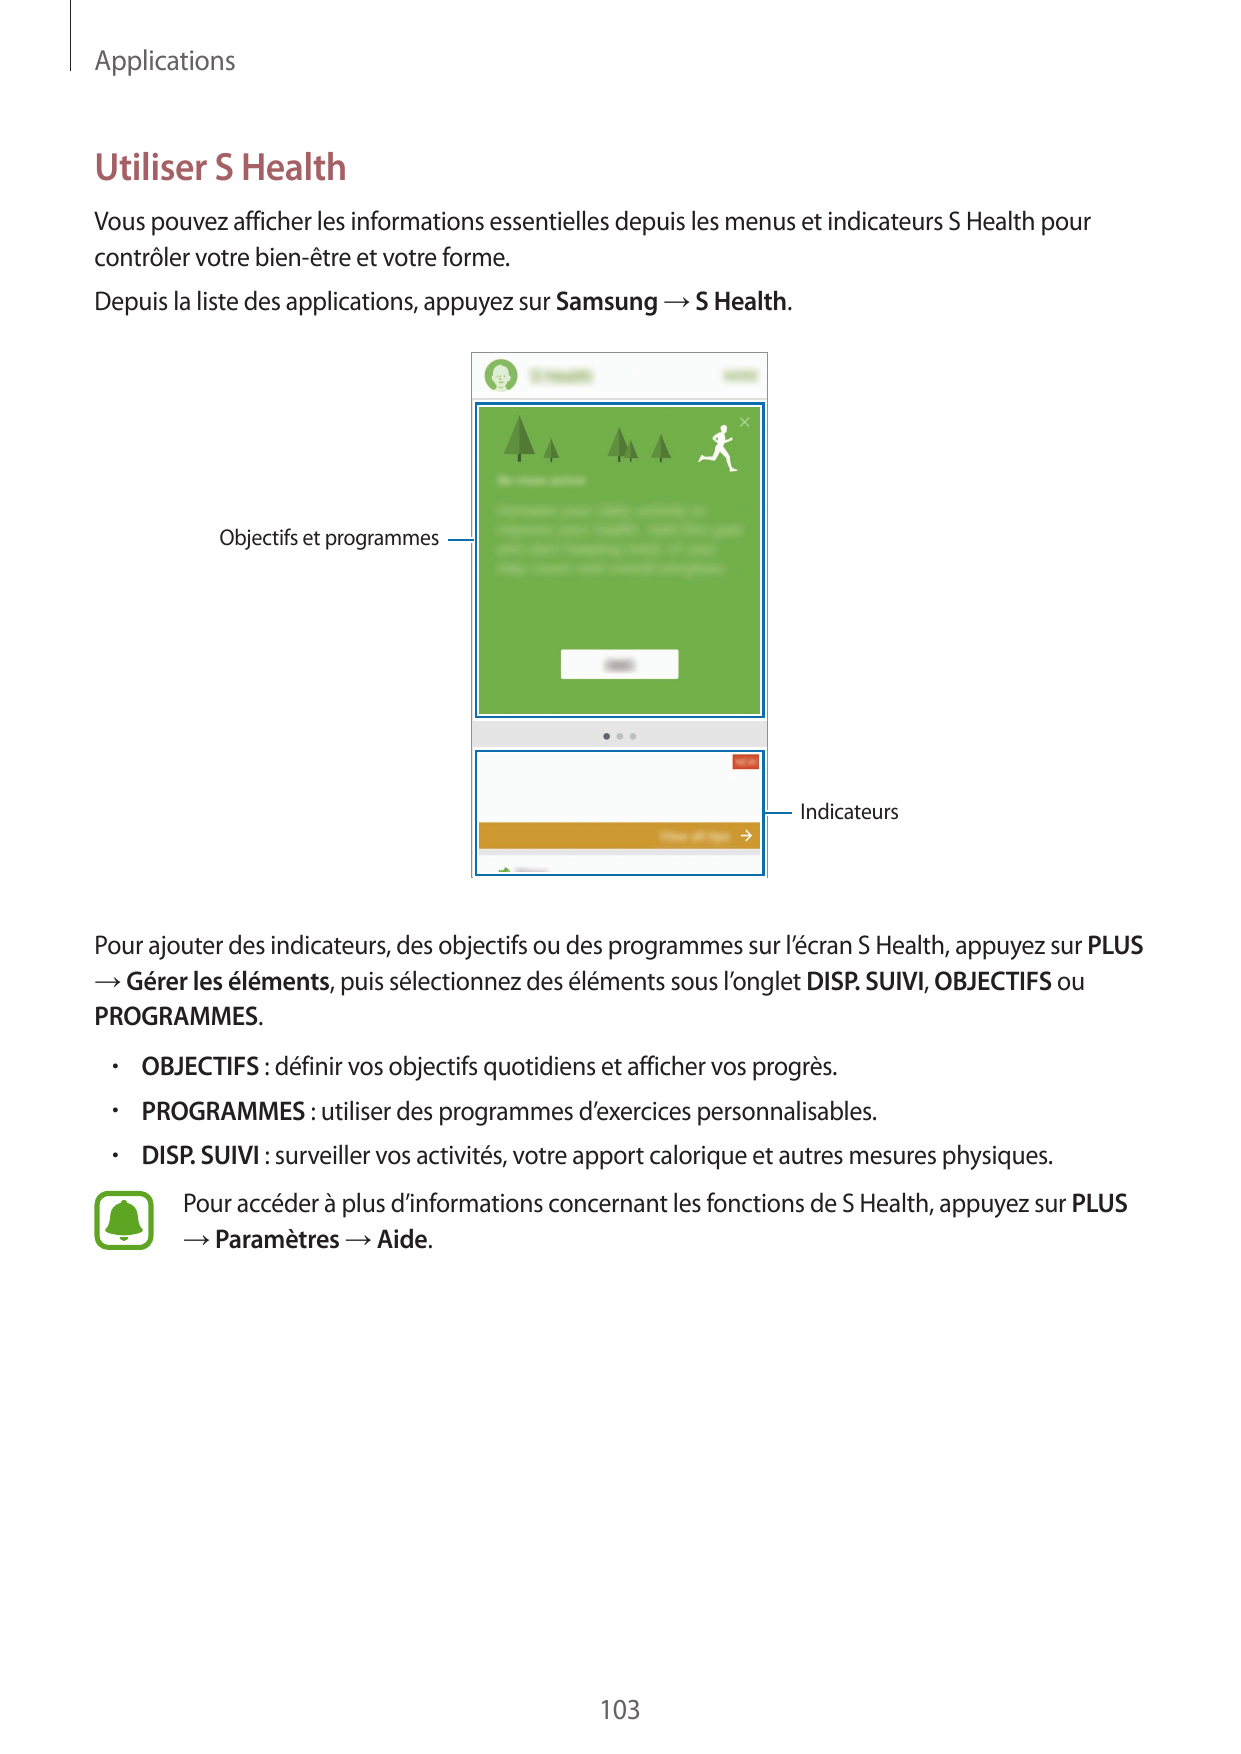 ApplicationsUtiliser S HealthVous pouvez afficher les informations essentielles depuis les menus et indicateurs S Health pourcon